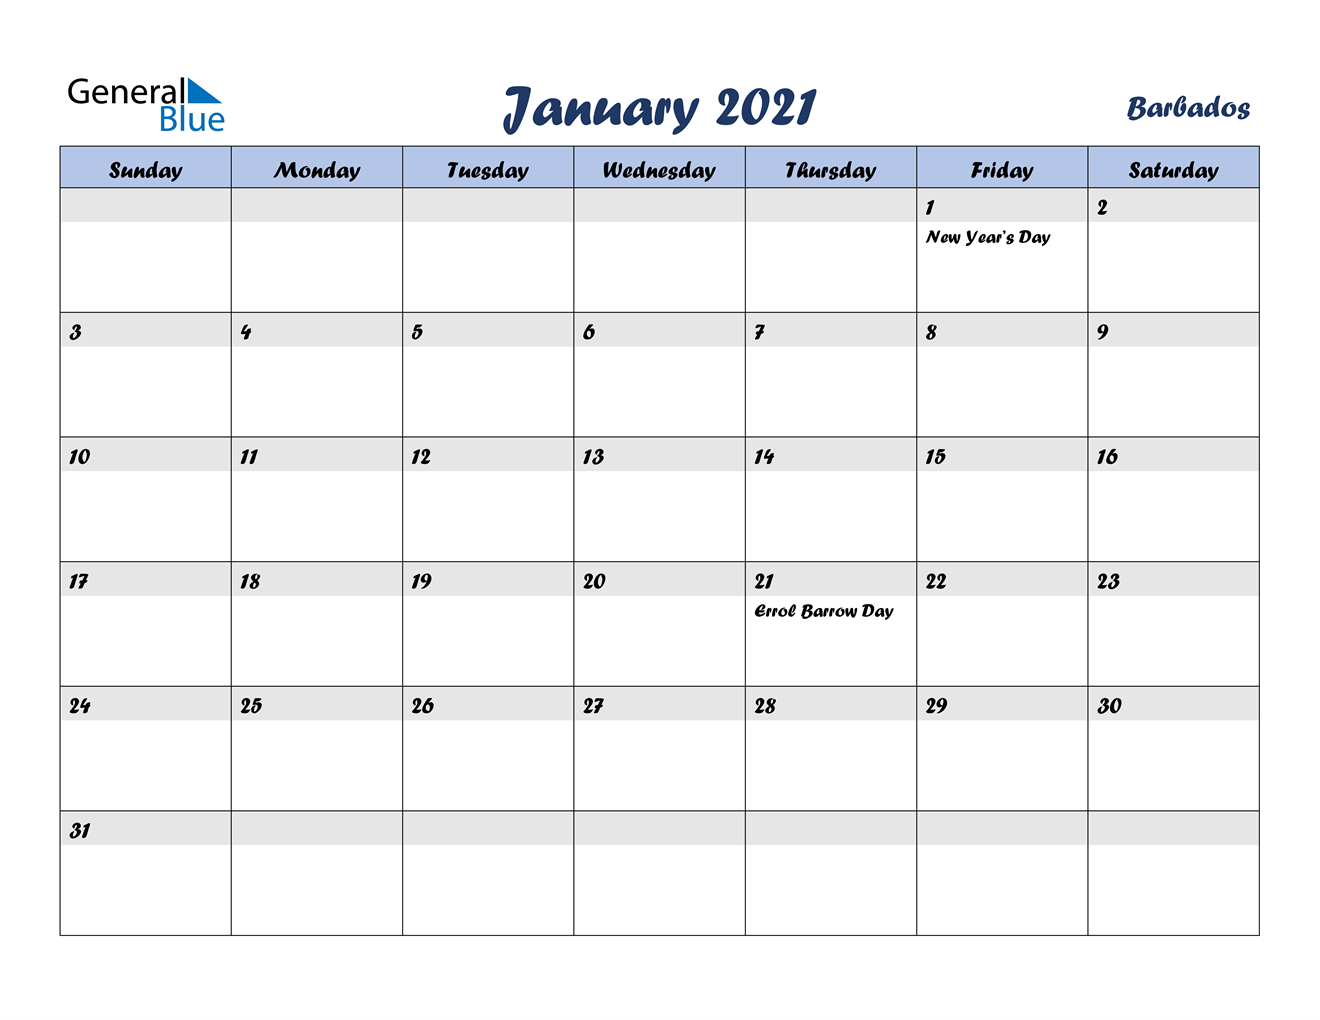 January 2021 Calendar - Barbados